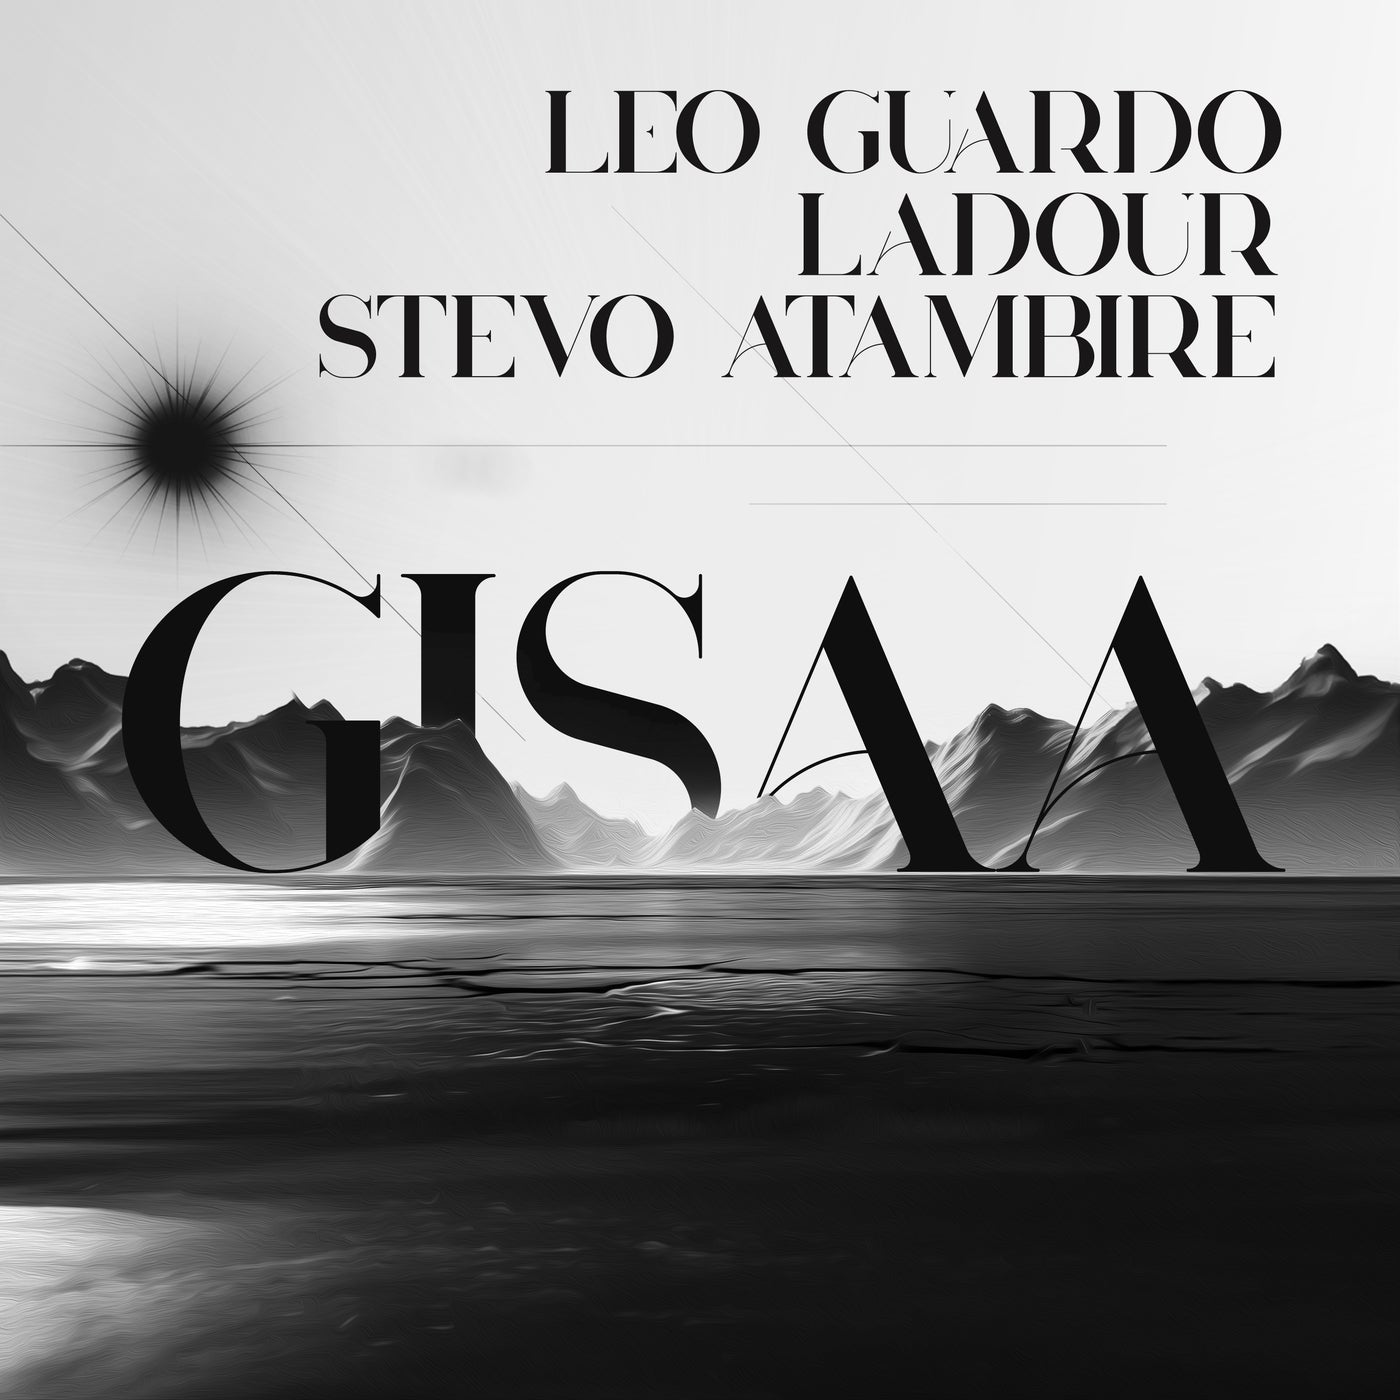 Cover - Ladour, Leo Guardo, Stevo Atambire - Gisaa (Original Mix)